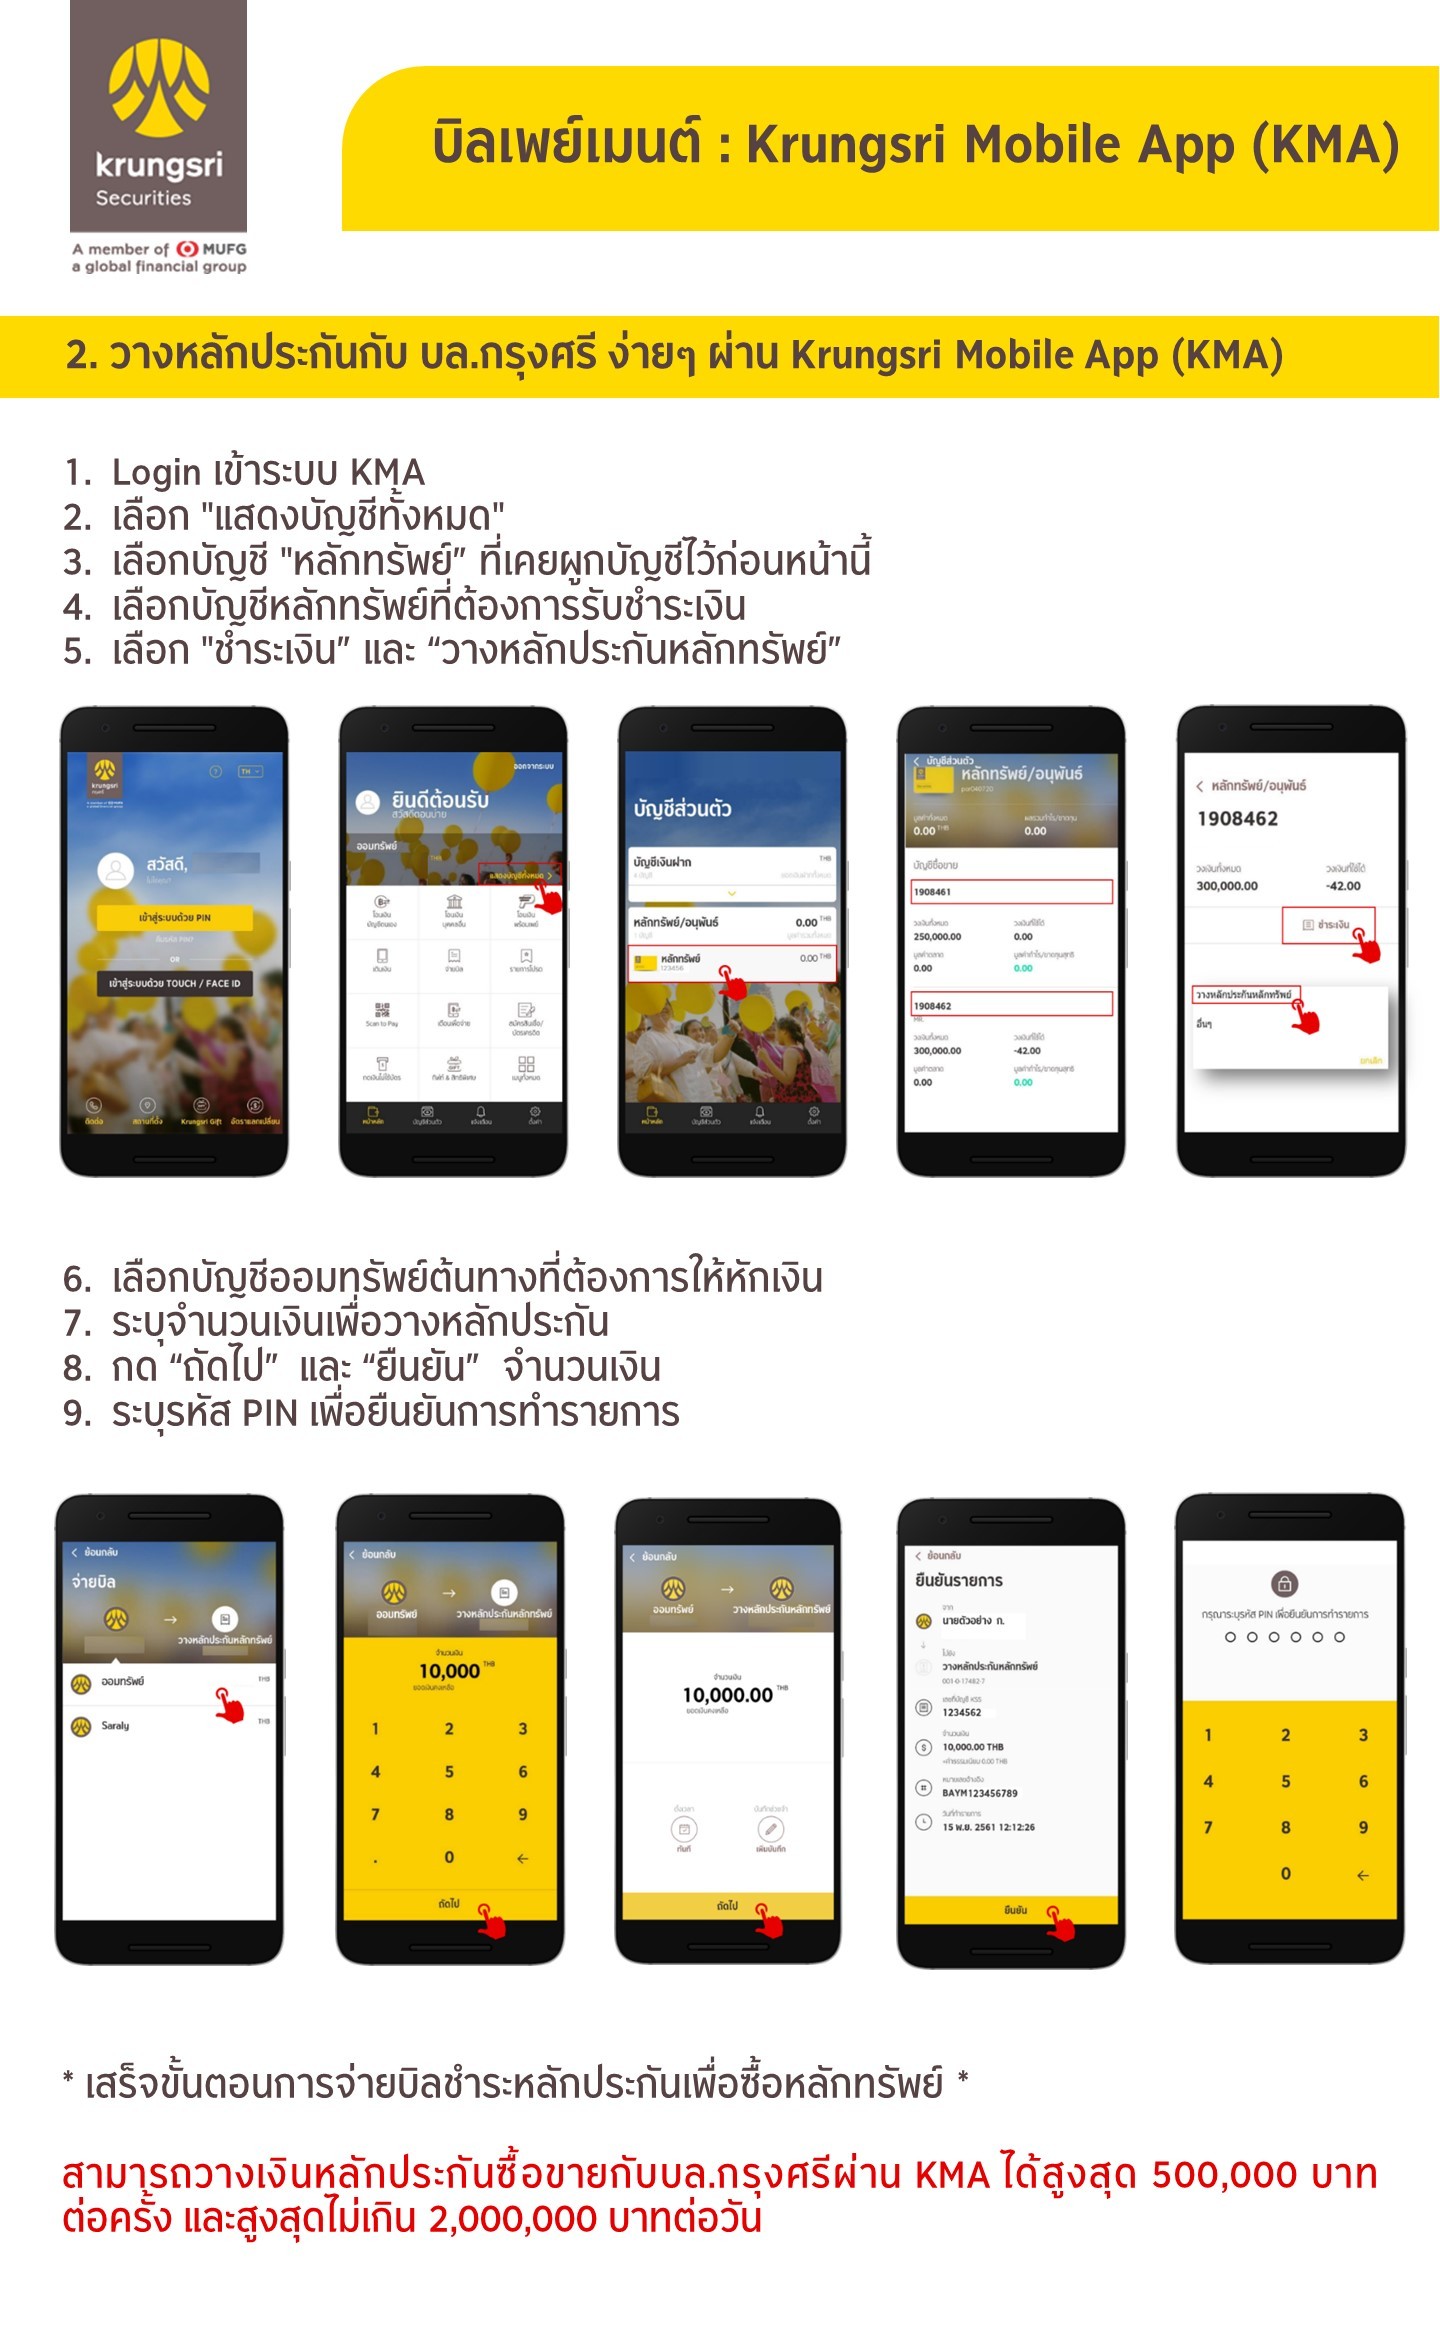 วางหลักประกันกับ บล.กรุงศรี ง่ายๆ ผ่าน Krungsri Mobile App (KMA)